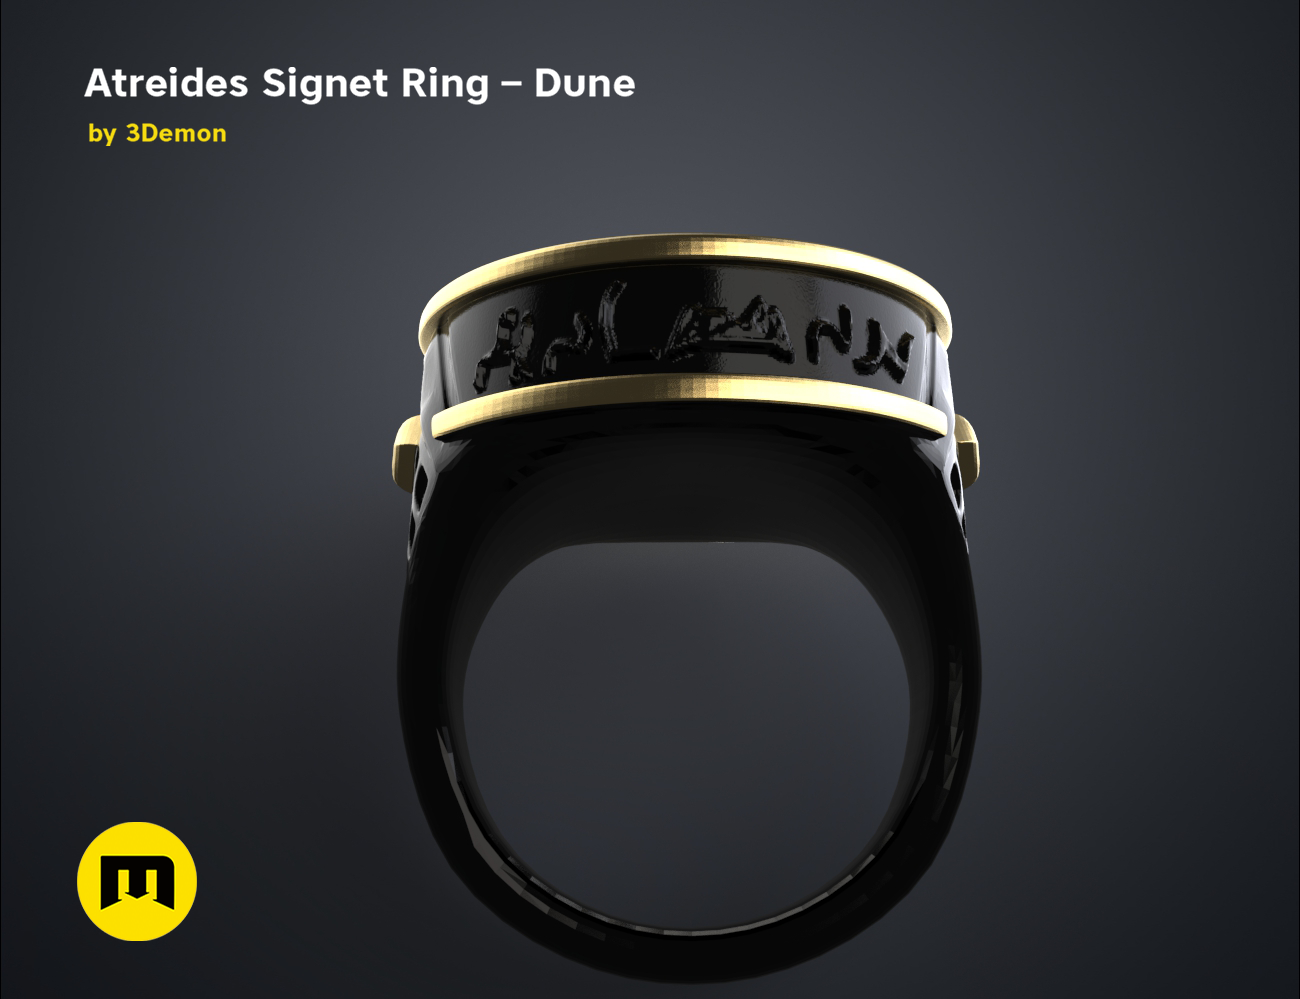 Atreides-ring-color.7.png Download free STL file Atreides Signet Ring - Dune • 3D printing template, 3D-mon